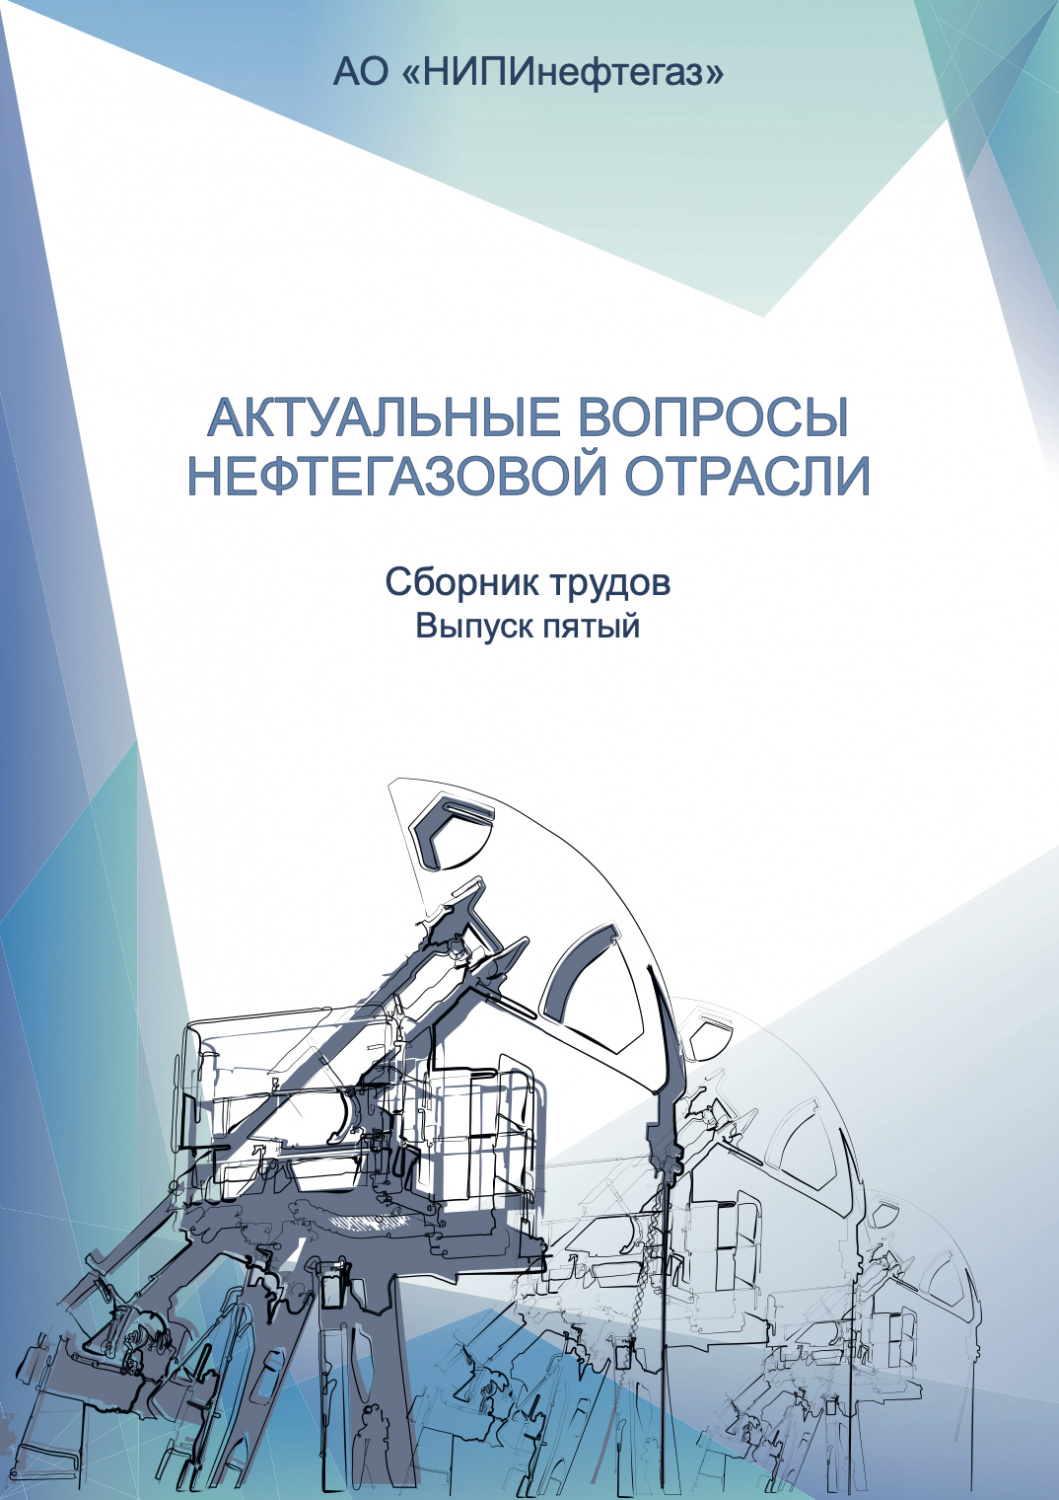 Актуальные вопросы нефтегазовой отрасли. Сборник трудов АО "НИПИнефтегаз" выпуск 5 (2018 год)